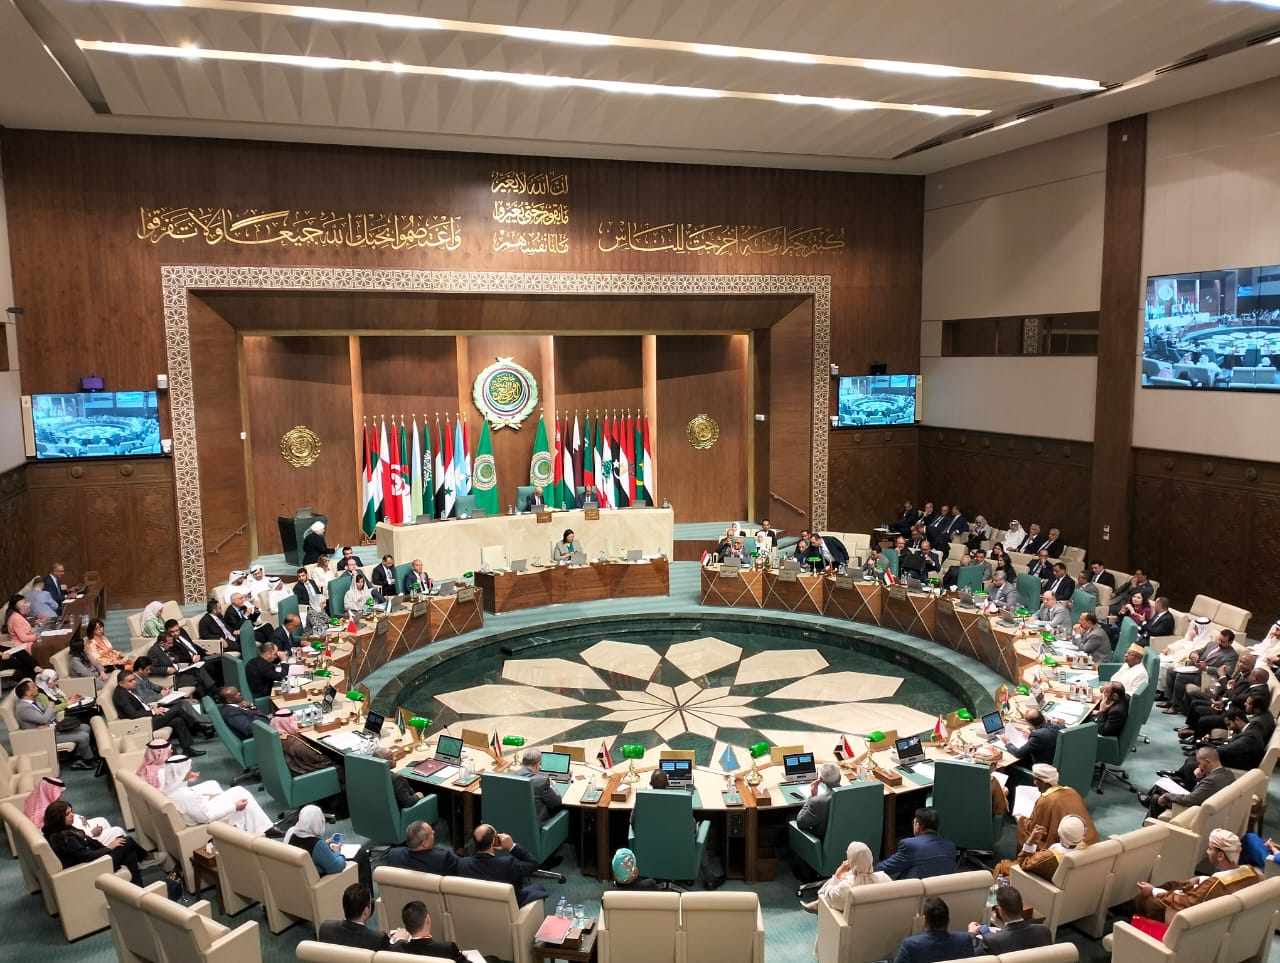 بالتعاون مع الجامعة العربية المغرب يستضيف الإطلاق الرسمي للخطة العربية للتربية والتثقيف في مجال حقوق الإنسان